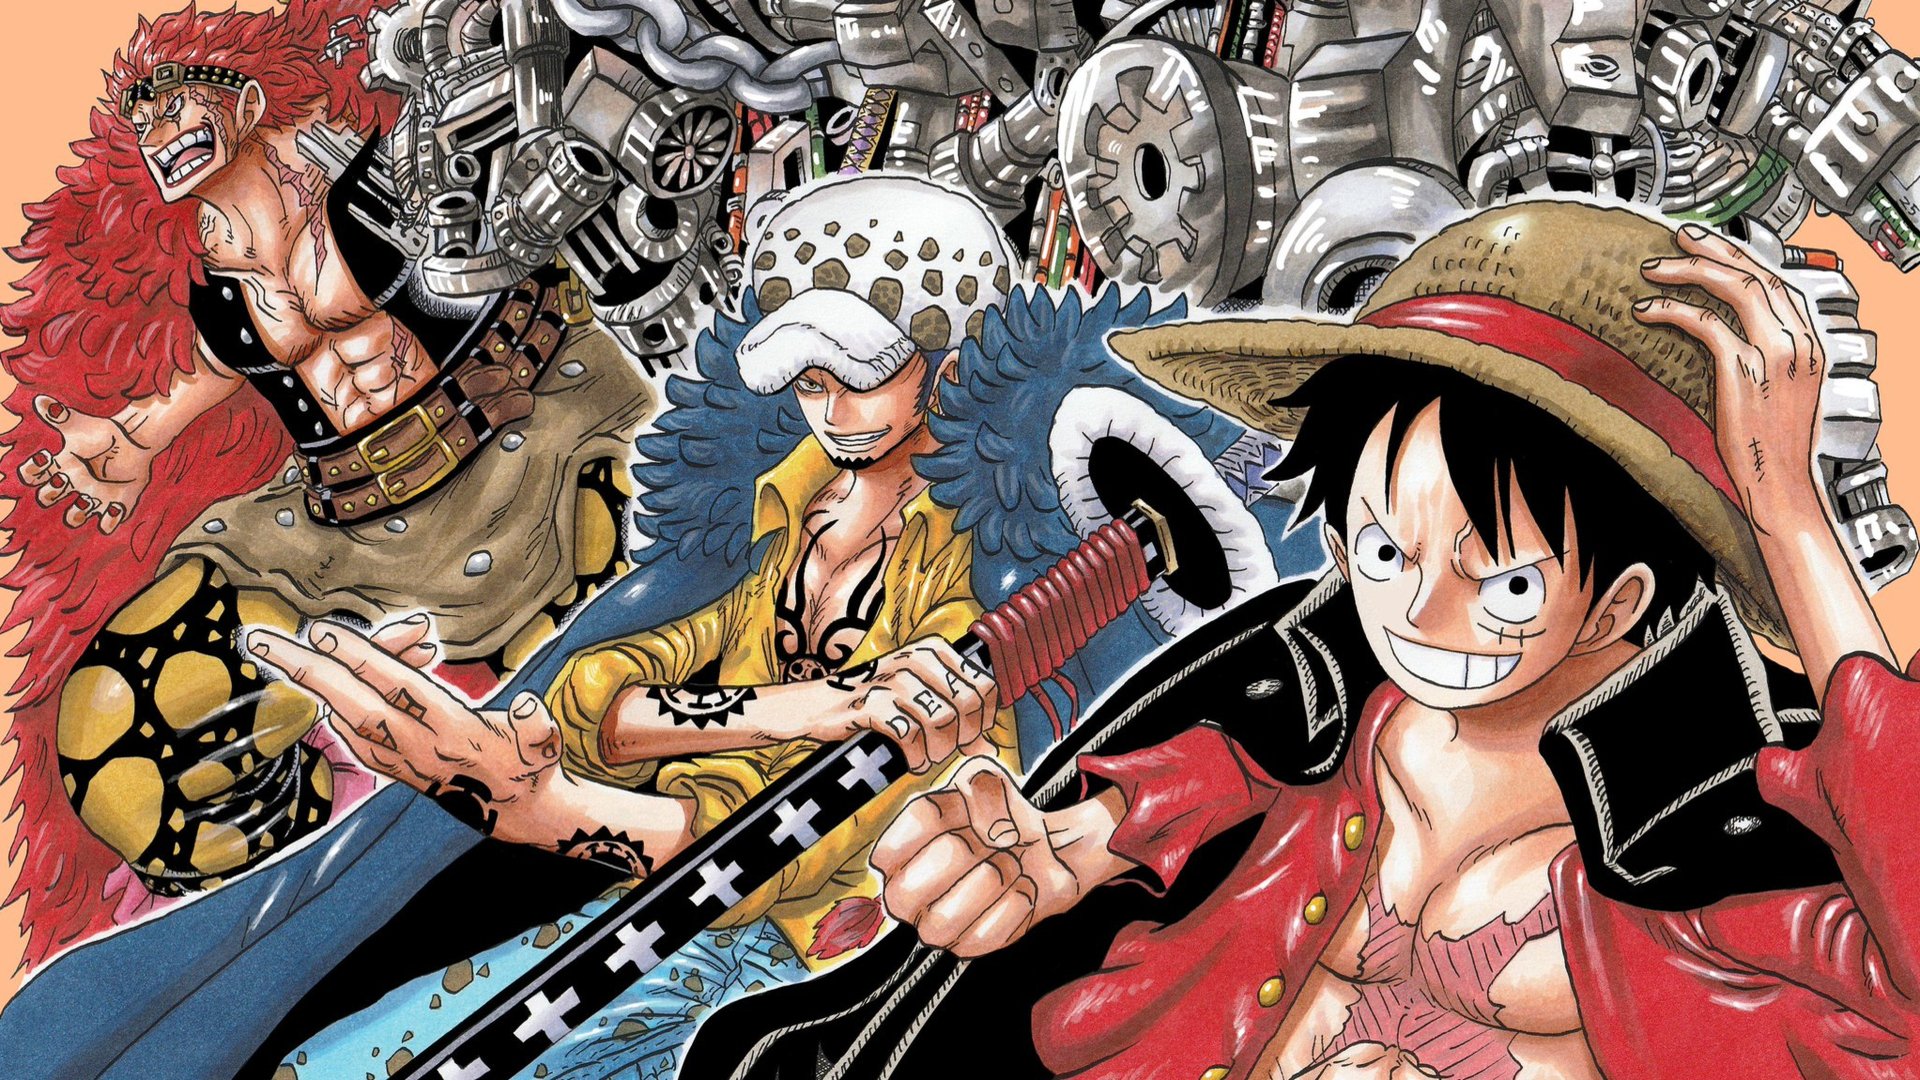 Law và Kid - Đón xem hình ảnh đầy cuốn hút về cuộc đối đầu nảy lửa giữa hai nhân vật Law và Kid trong bộ anime One Piece. Họ sẽ làm bạn không khíng được phải nghẹn ngào.